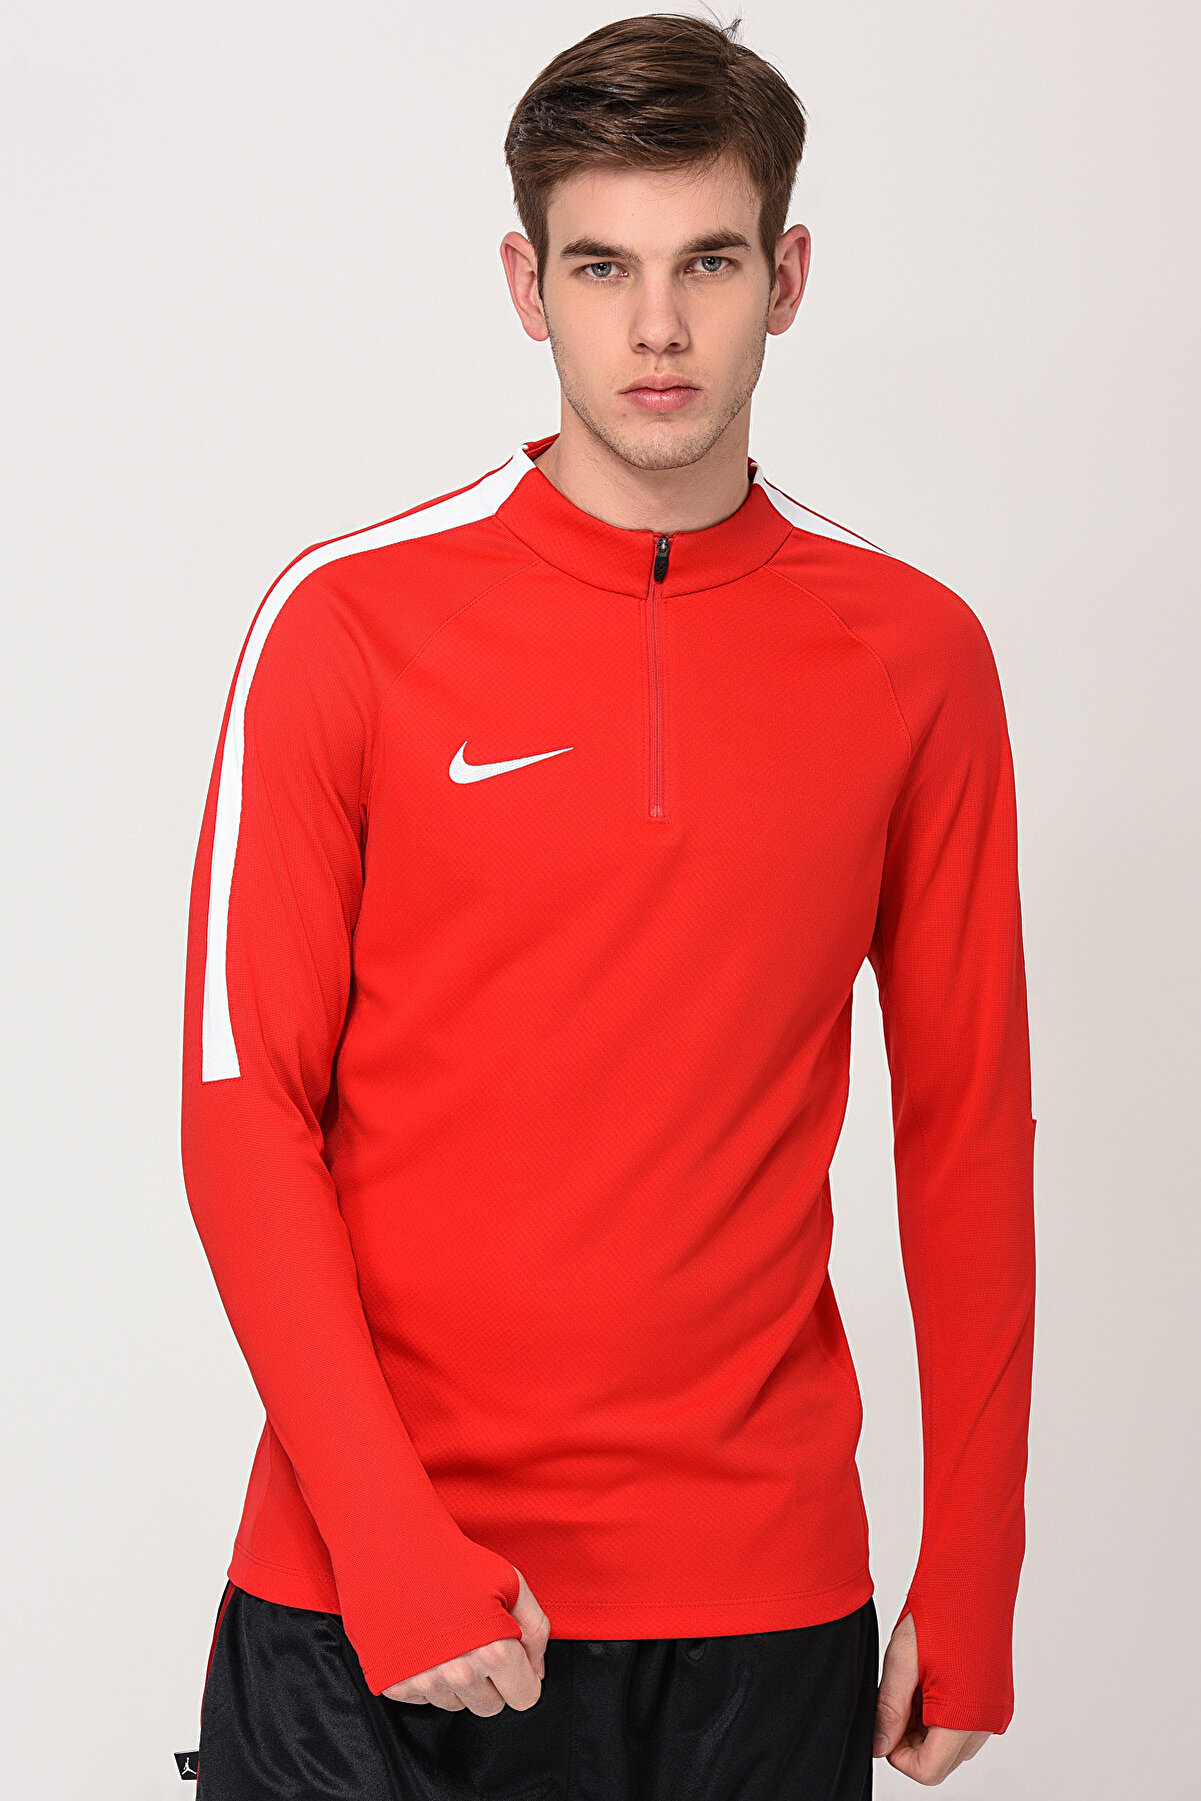 Nike Erkek Kırmızı Sweatshirt - Nk Dry Sqd17 Dril Top Ls - 831569-657